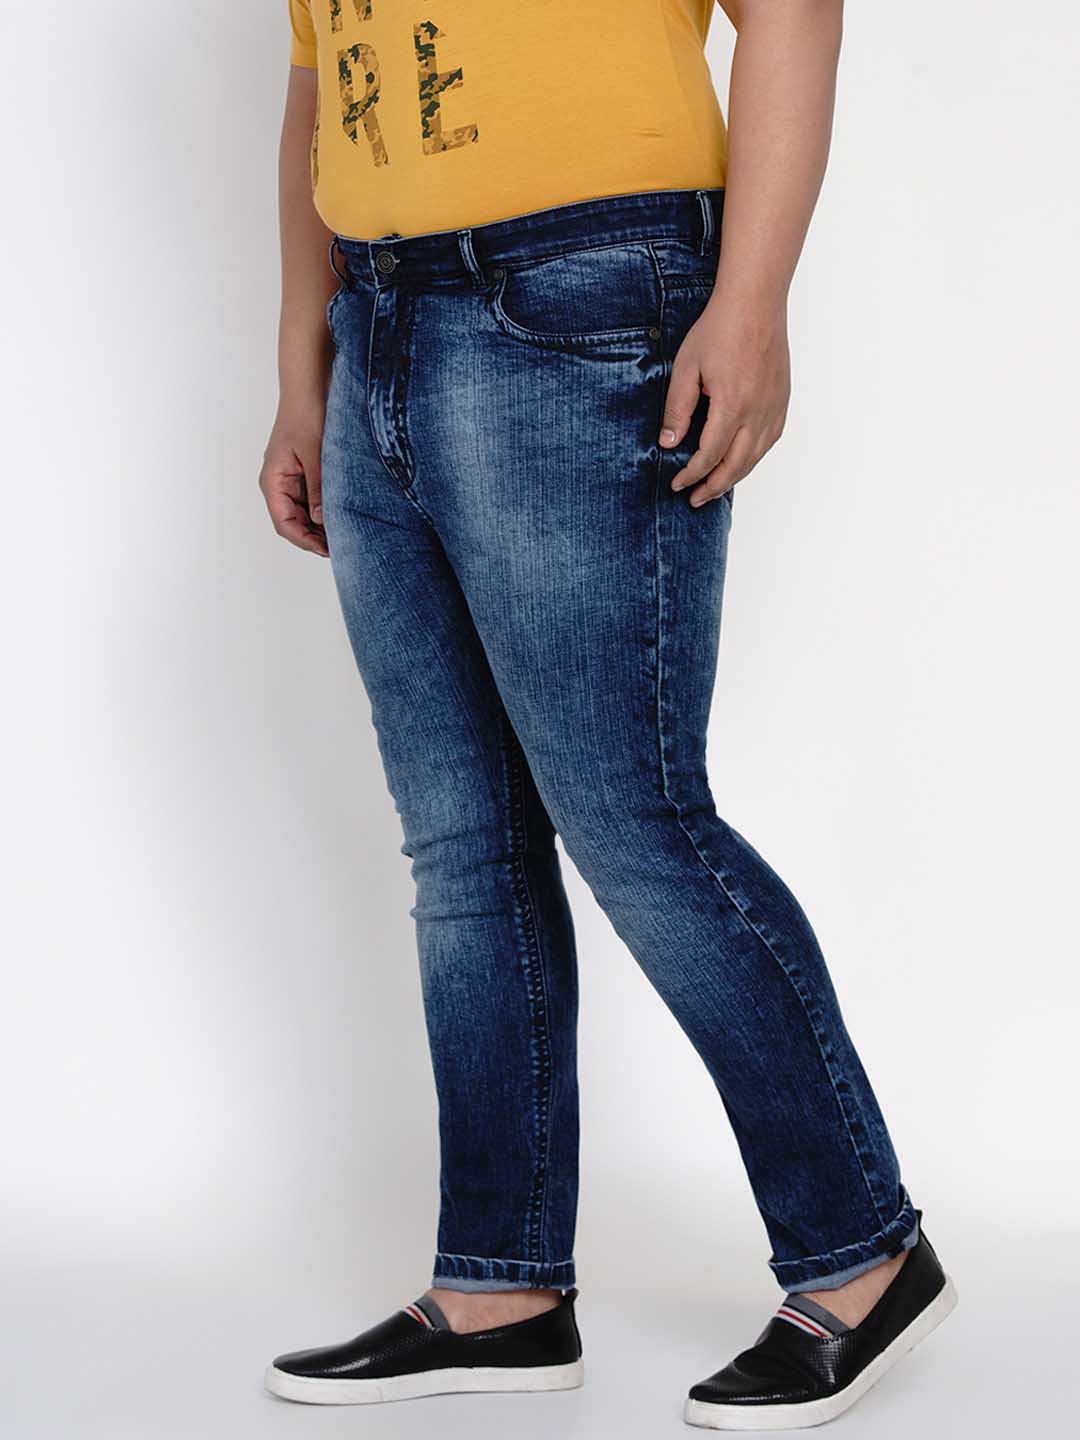 bottomwear/jeans/JPJ12121/jpj12121-3.jpg